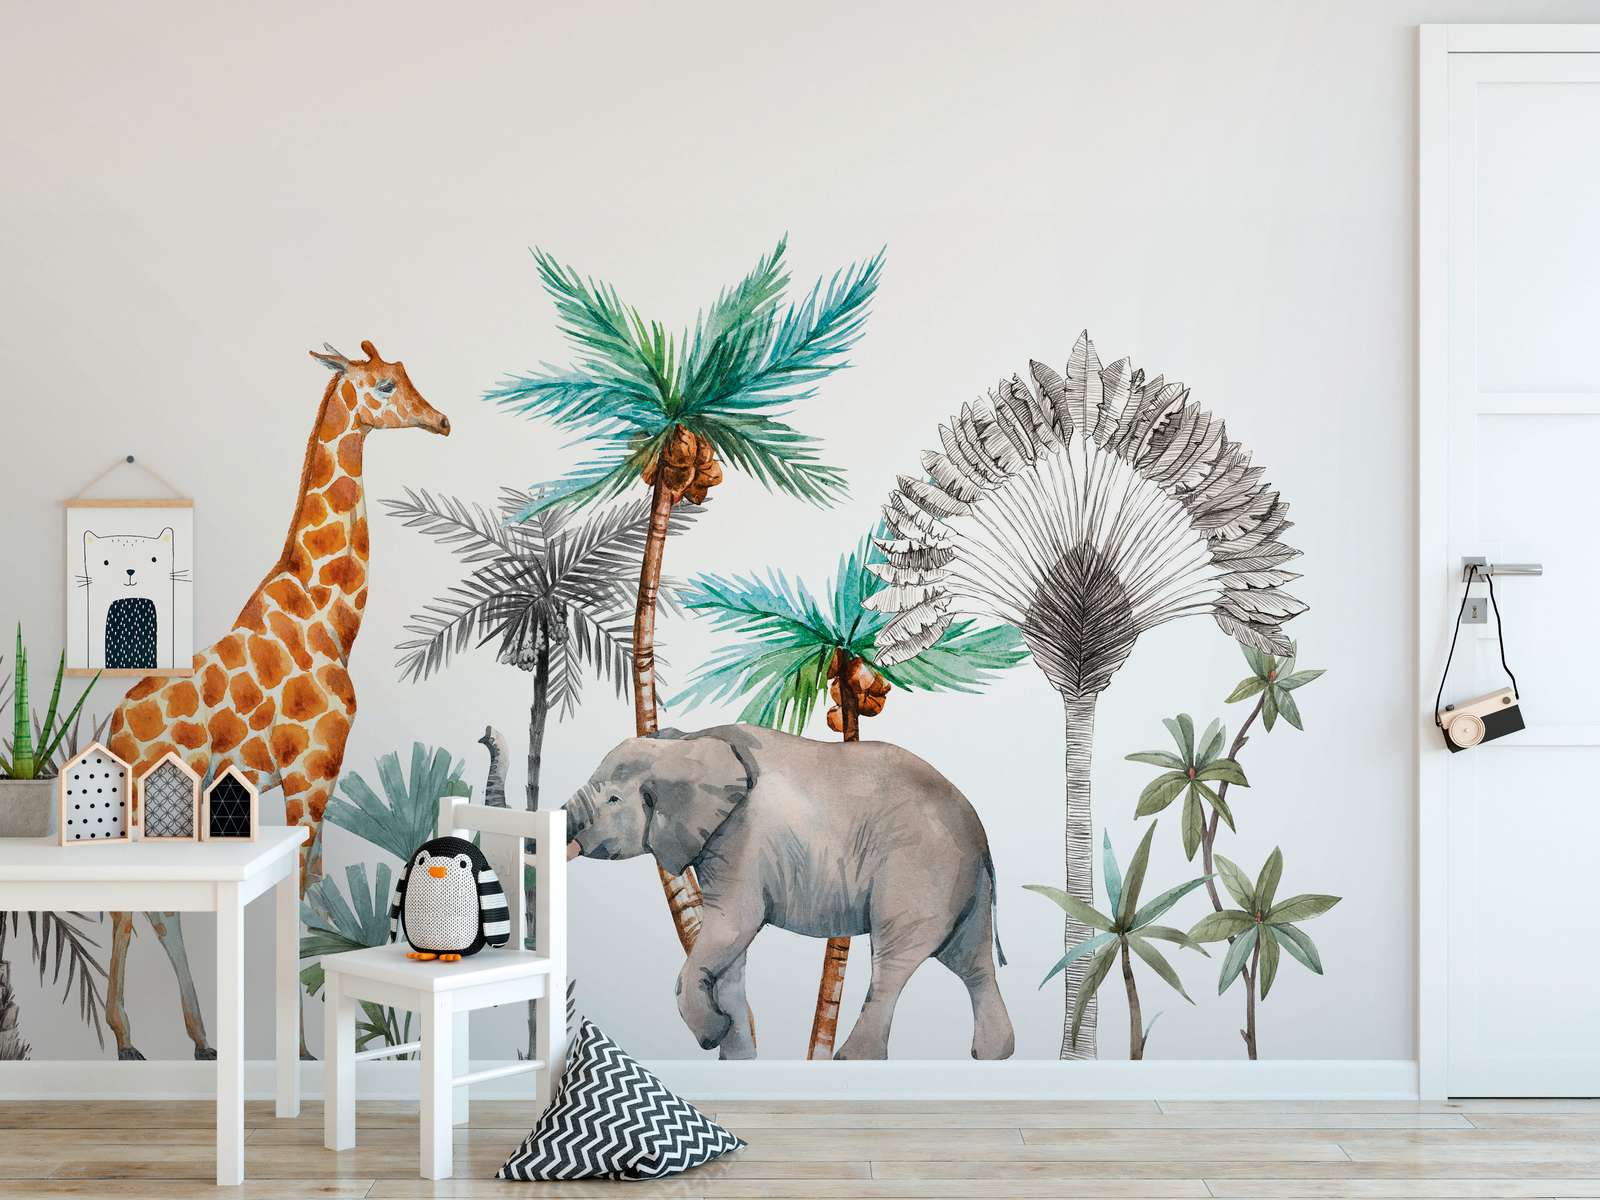             Fototapete für das Kinderzimmer mit Tieren und Bäumen – Weiß, Grün, Grau
        